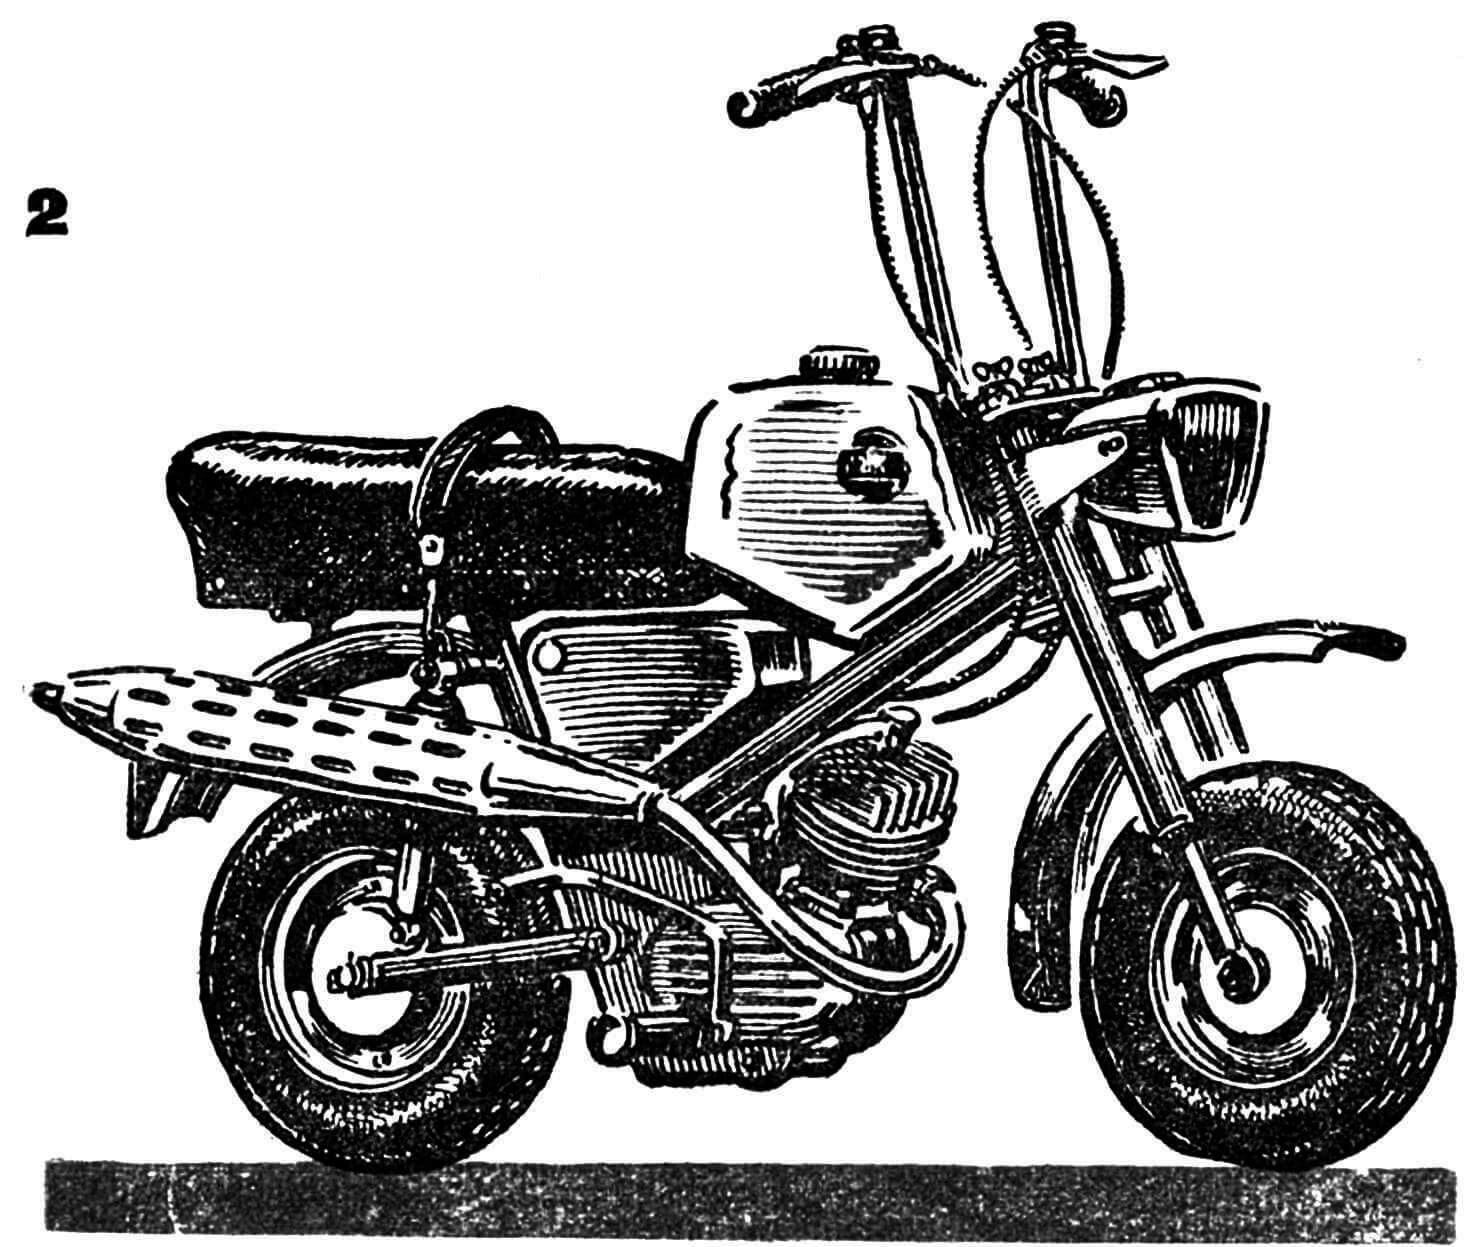 Микромотоцикл заводского изготовления (Италия) с двигателем 49 см3. Вес машины — 50 кг, скорость — до 60 км/час. Руль складывается вдоль, что сразу намного уменьшает габариты микромотоцикла. Шины — размером 3,50x8, на штампованных дисках.